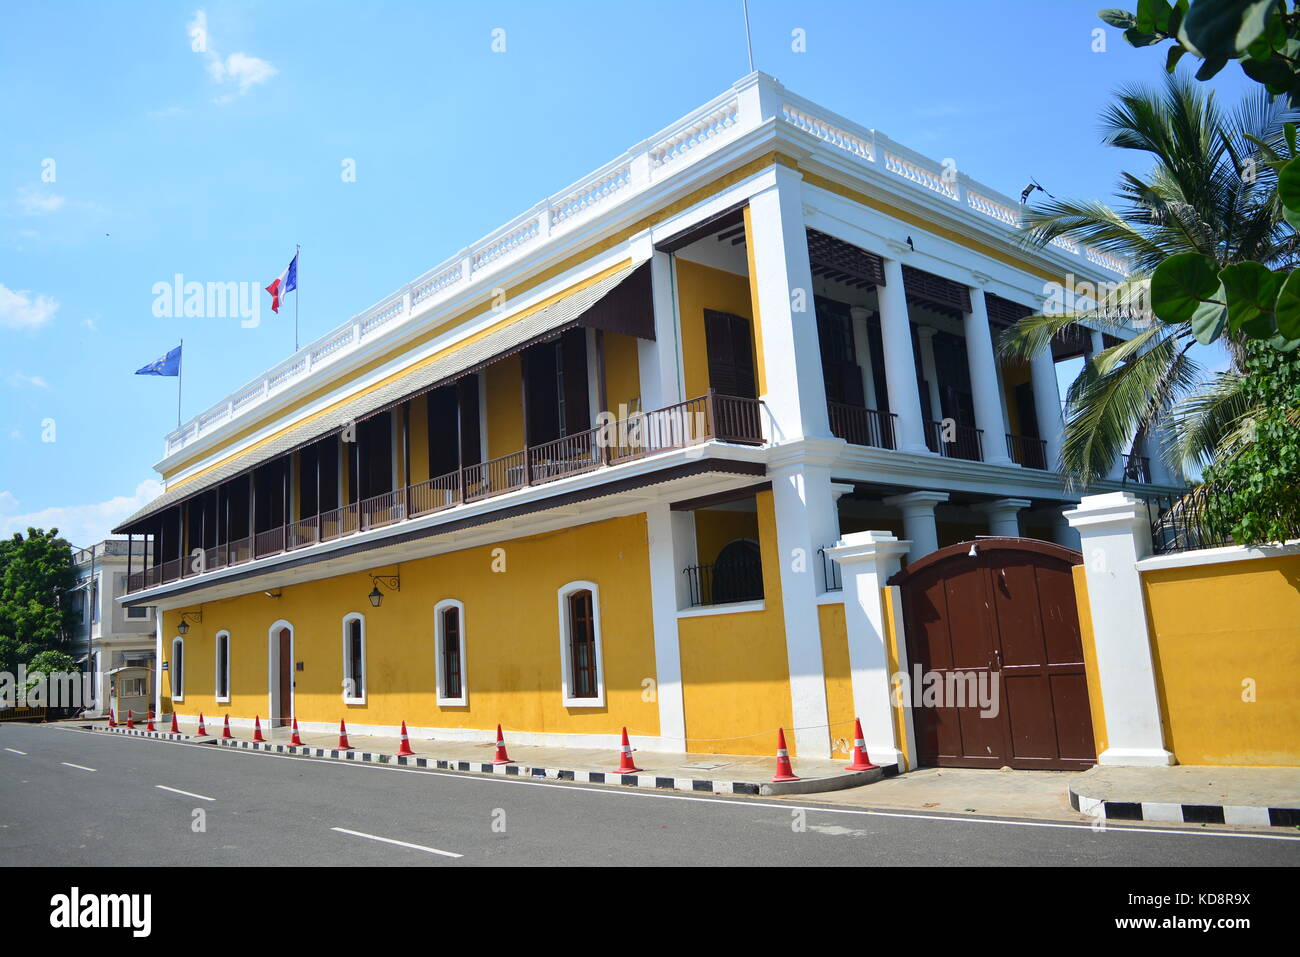 Consulat général de France à Pondicherry ist ein französisches Konsulat in Pondicherry/Puducherry in Tamil Nadu, Indien. Stockfoto